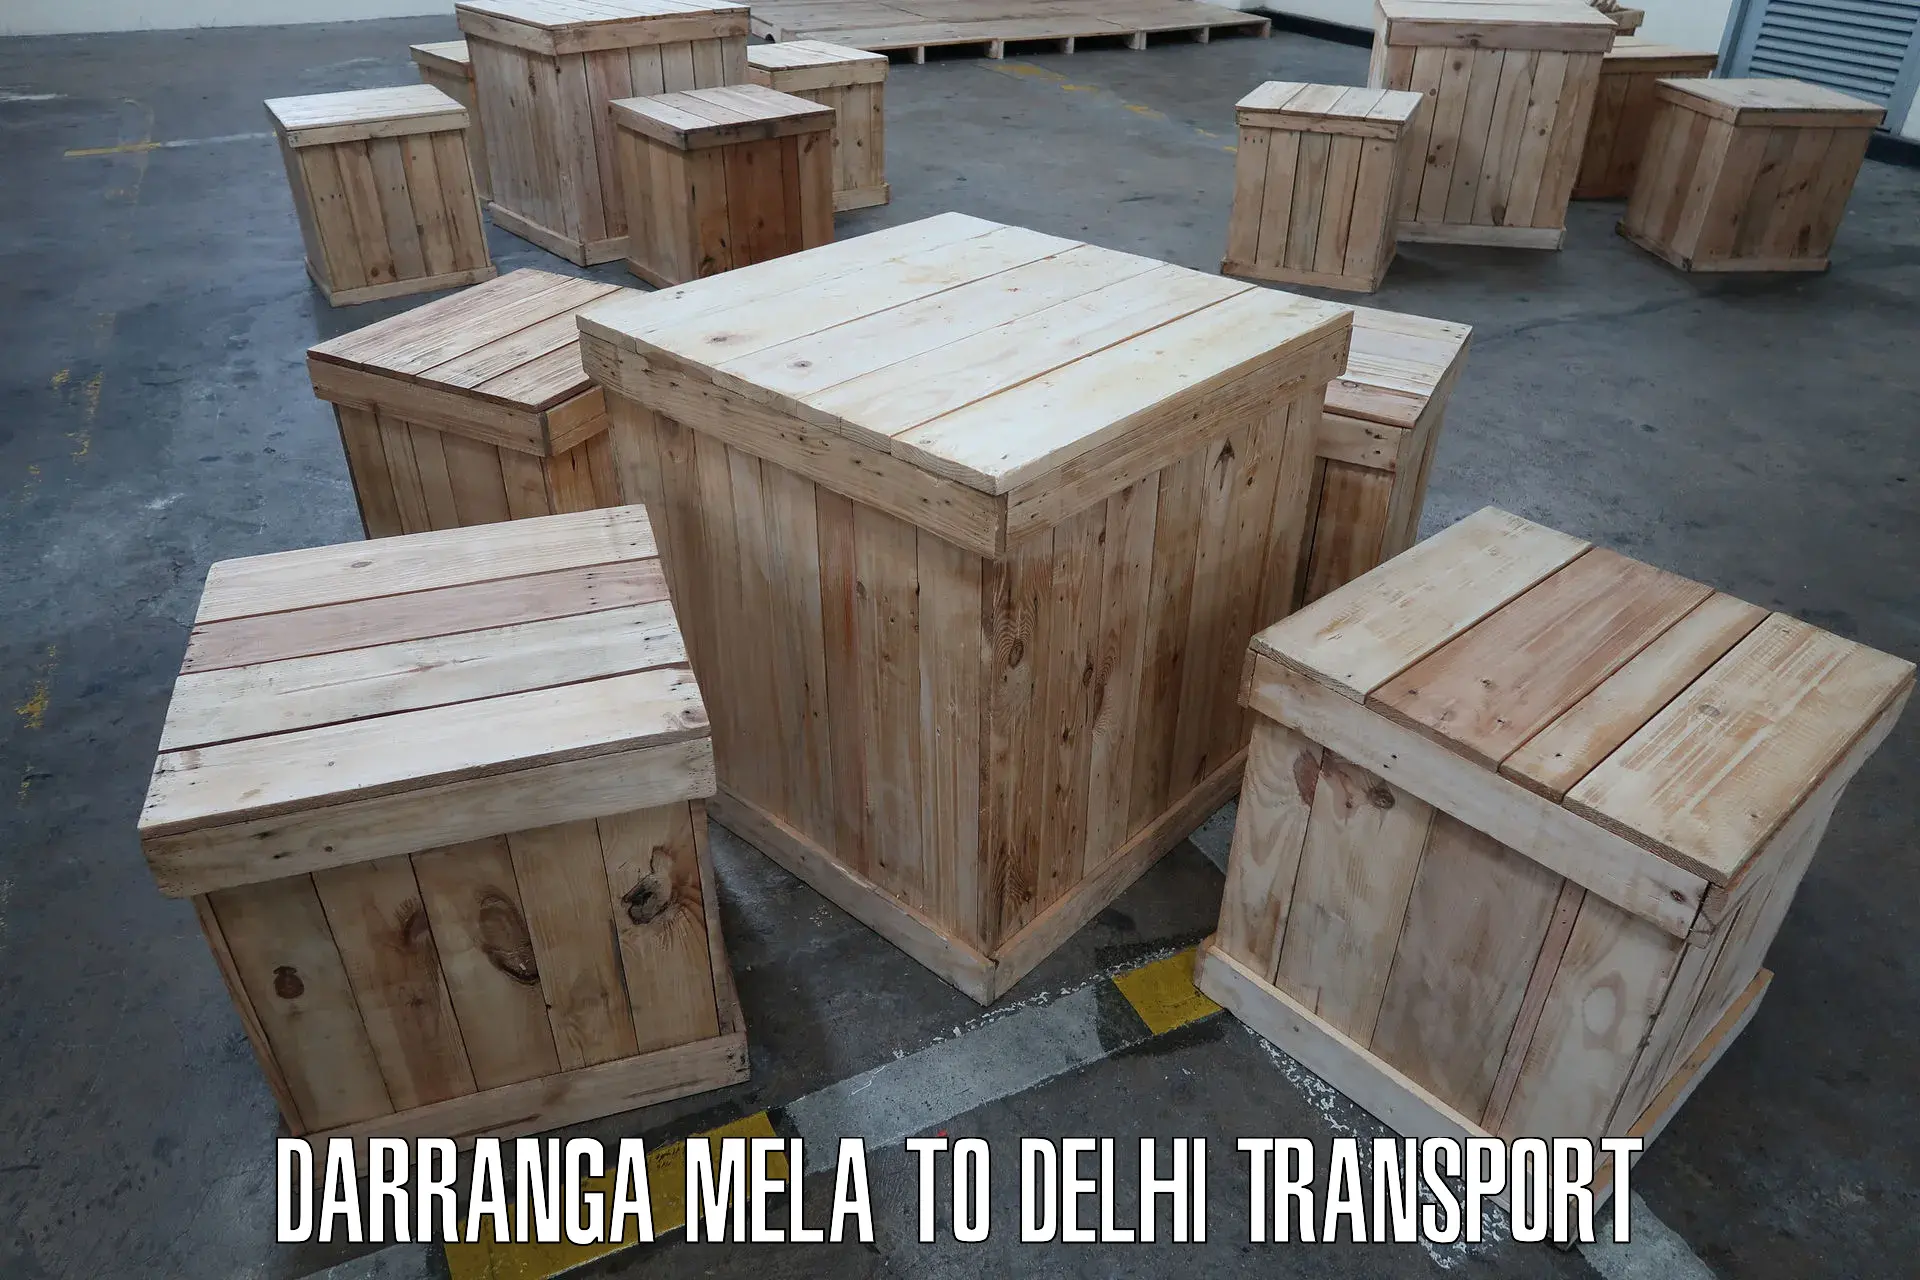 Door to door transport services Darranga Mela to Delhi Technological University DTU